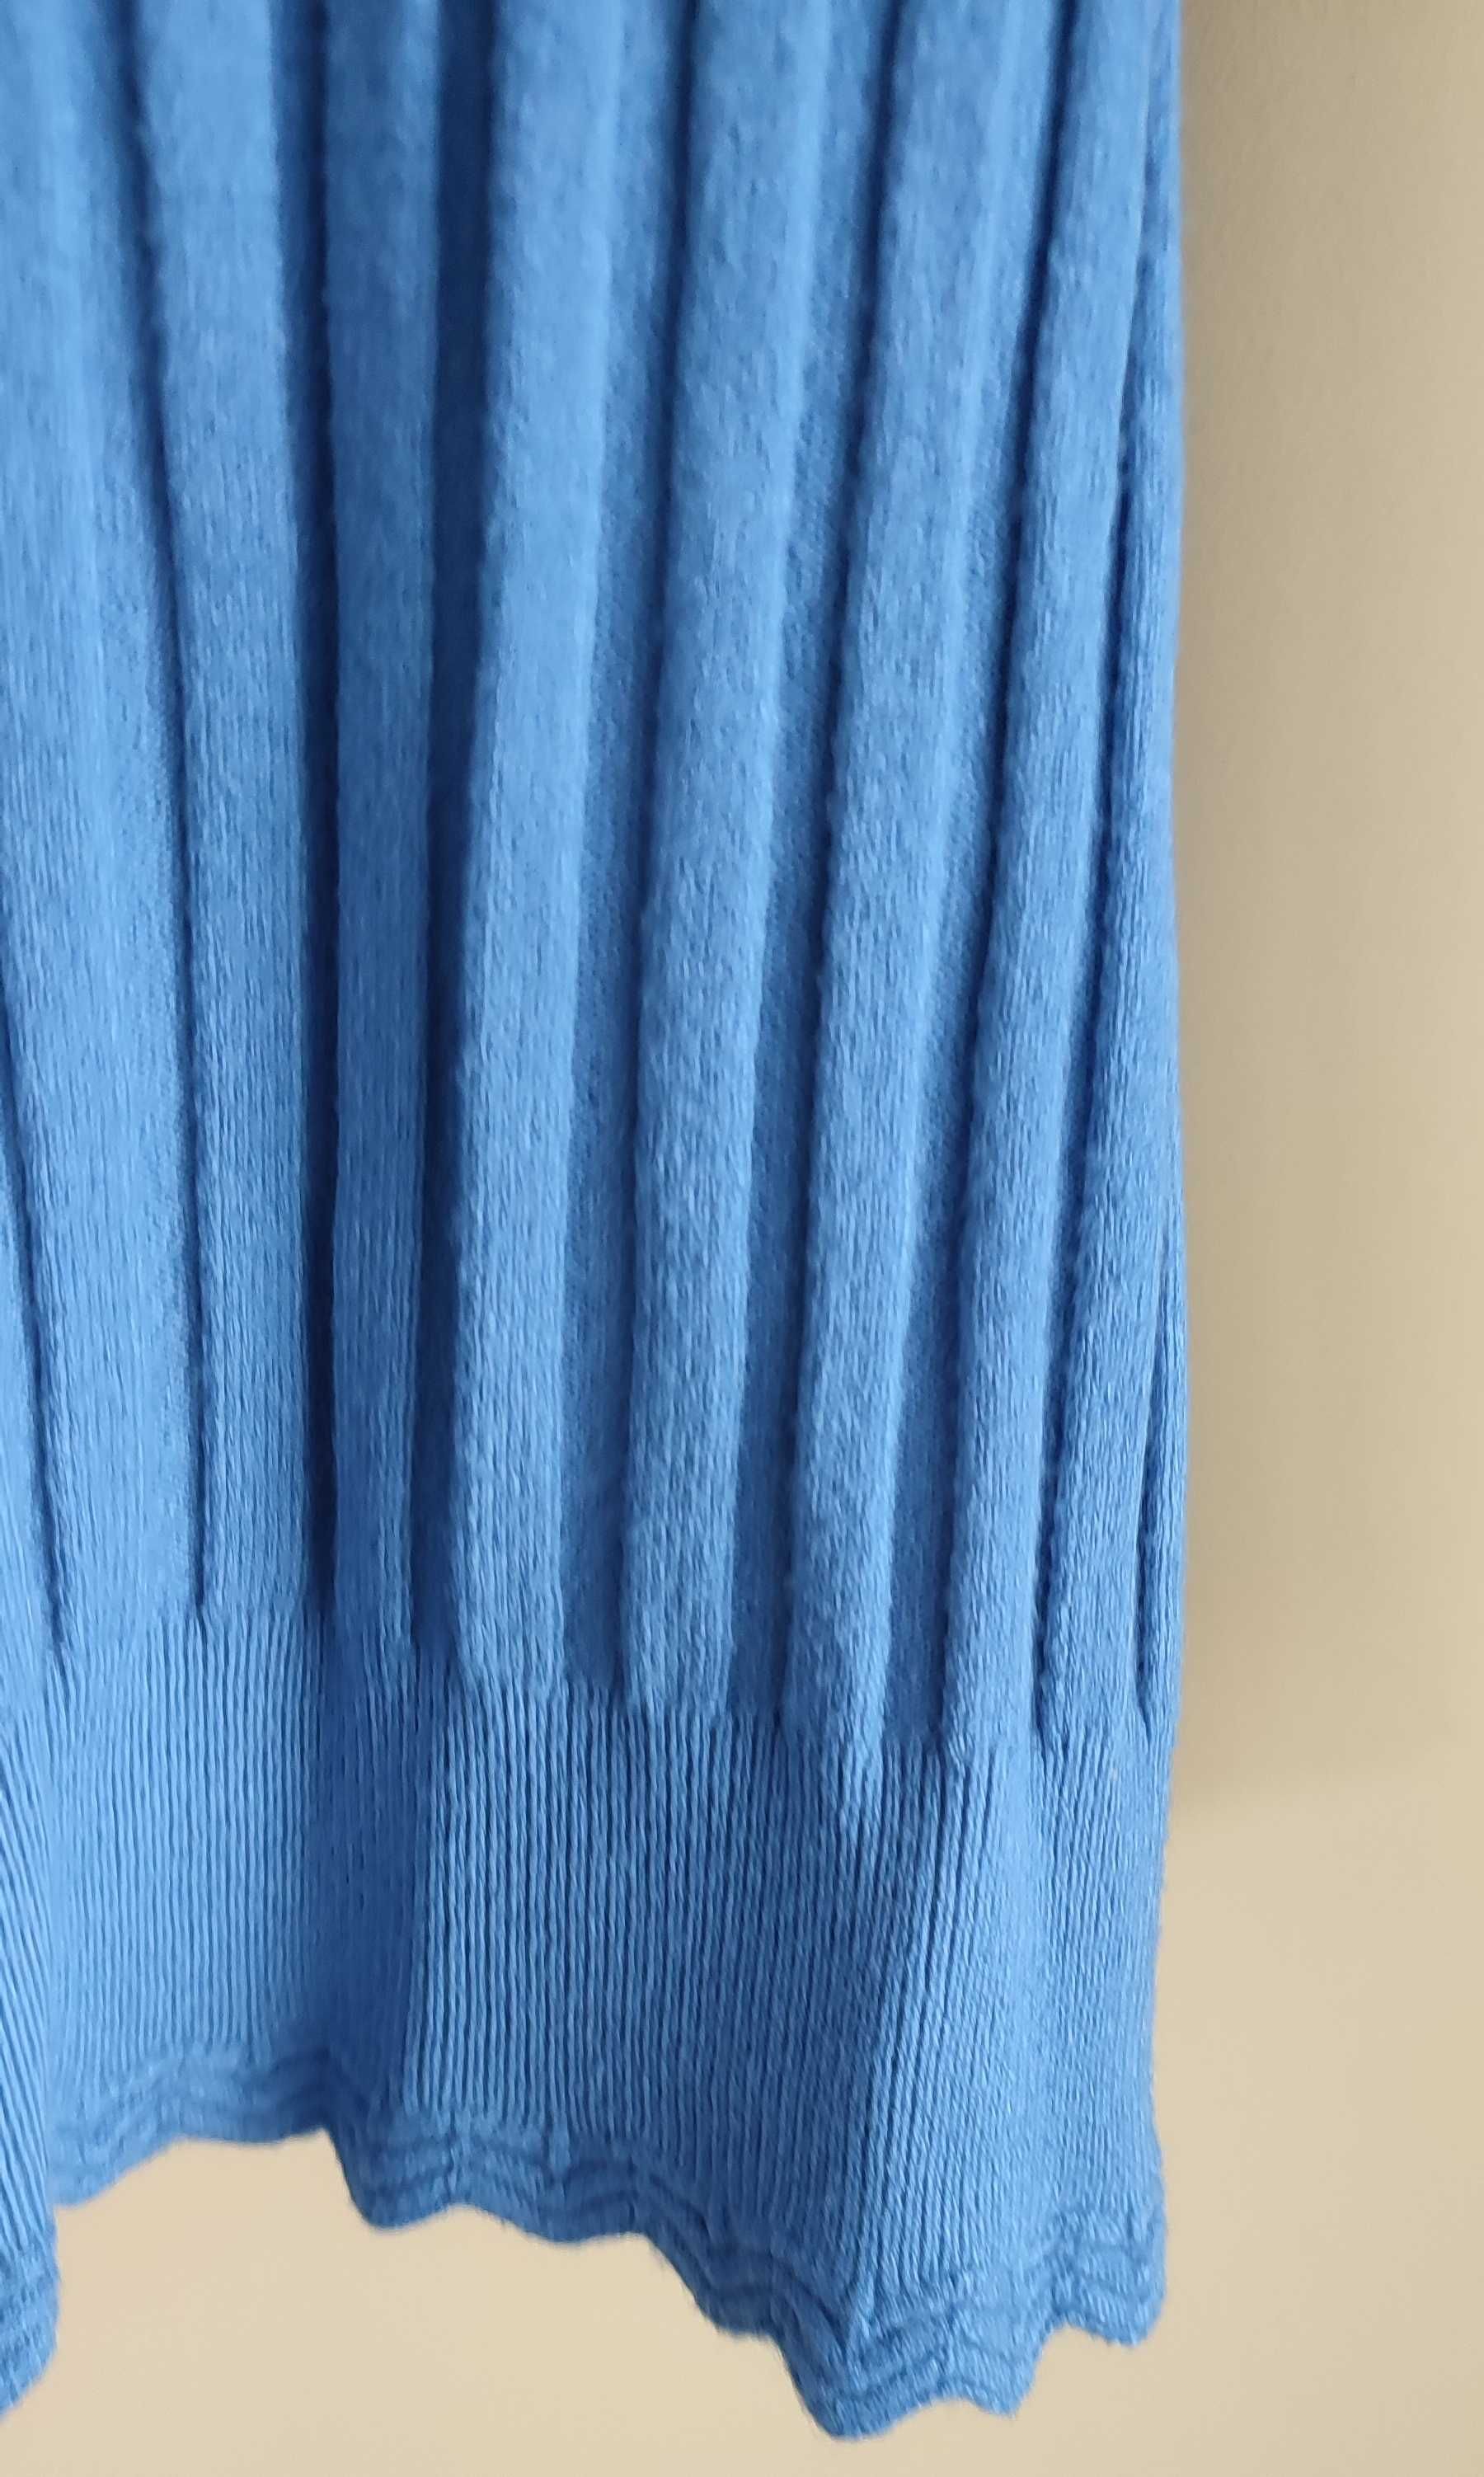 Sweter damski niebieski Kinga XL prążkowany wełna wiskoza kaszmir